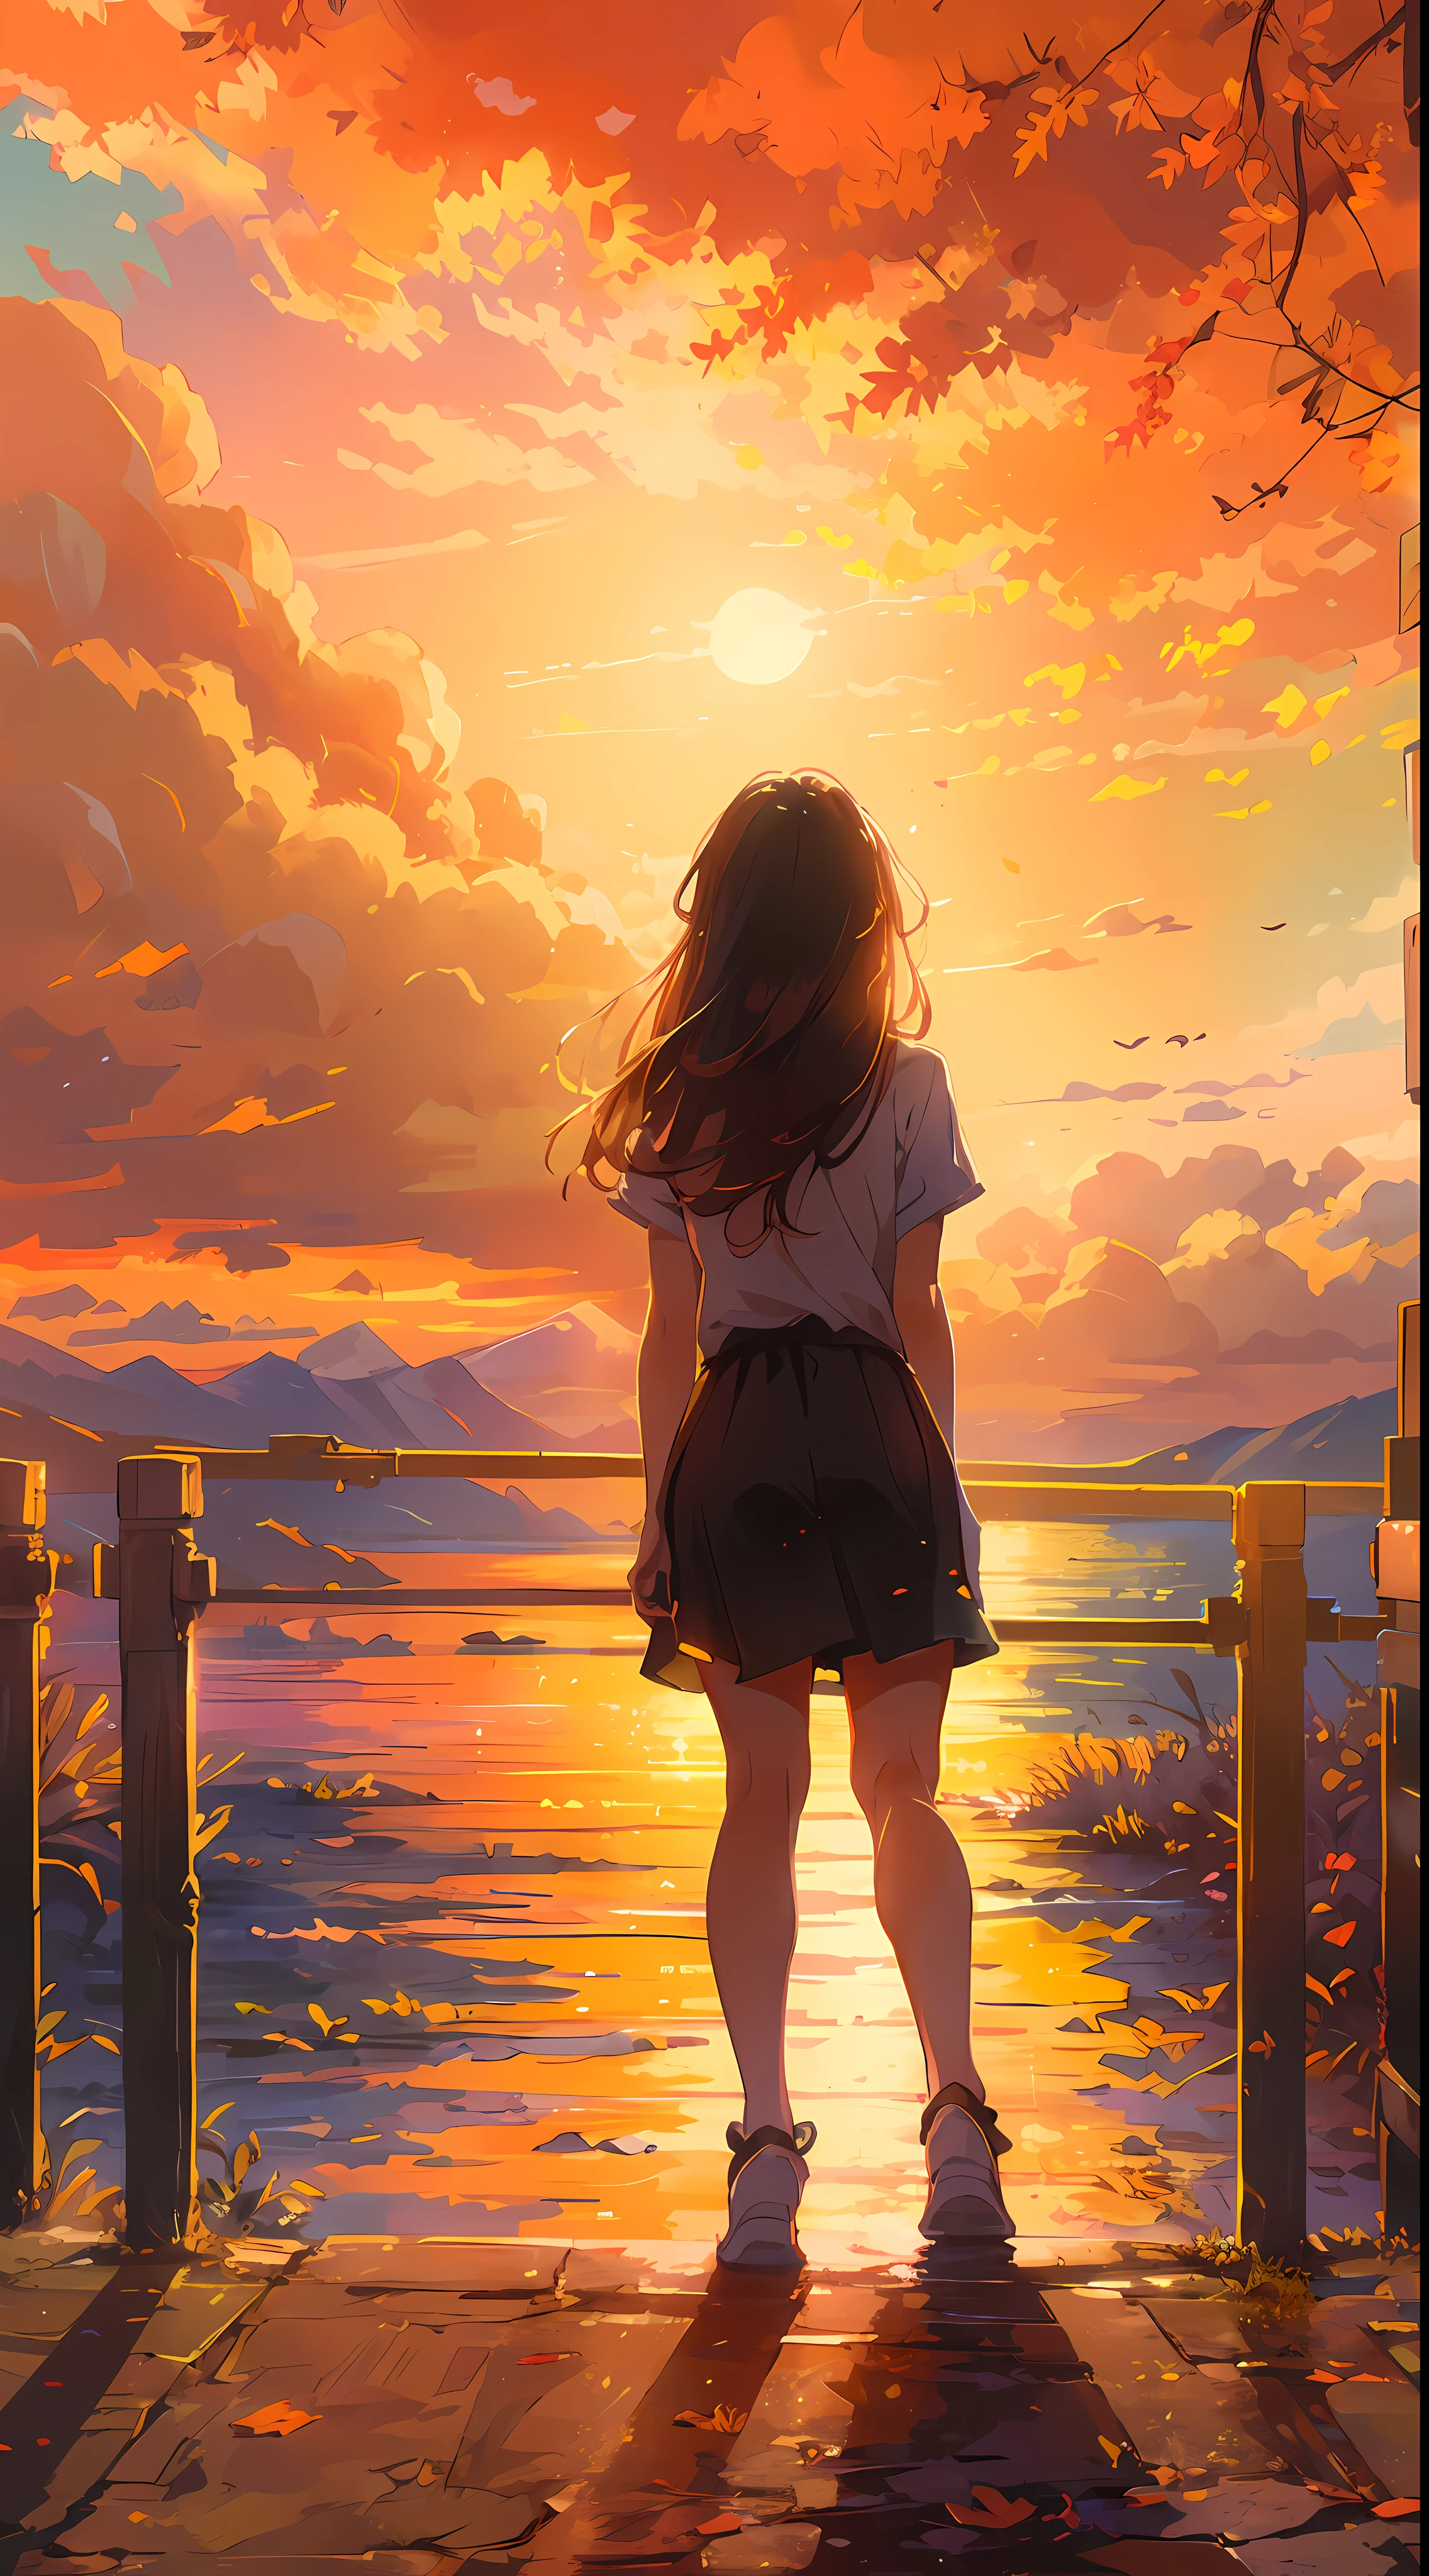 "Una fascinante escena de puesta de sol, una chica mirándolo, desde atrás, (Enfoque de la niña0.6), bañado en los tonos dorados de la luz del sol y las nubes, que emana un espectro vibrante e impresionante. Obra maestra."